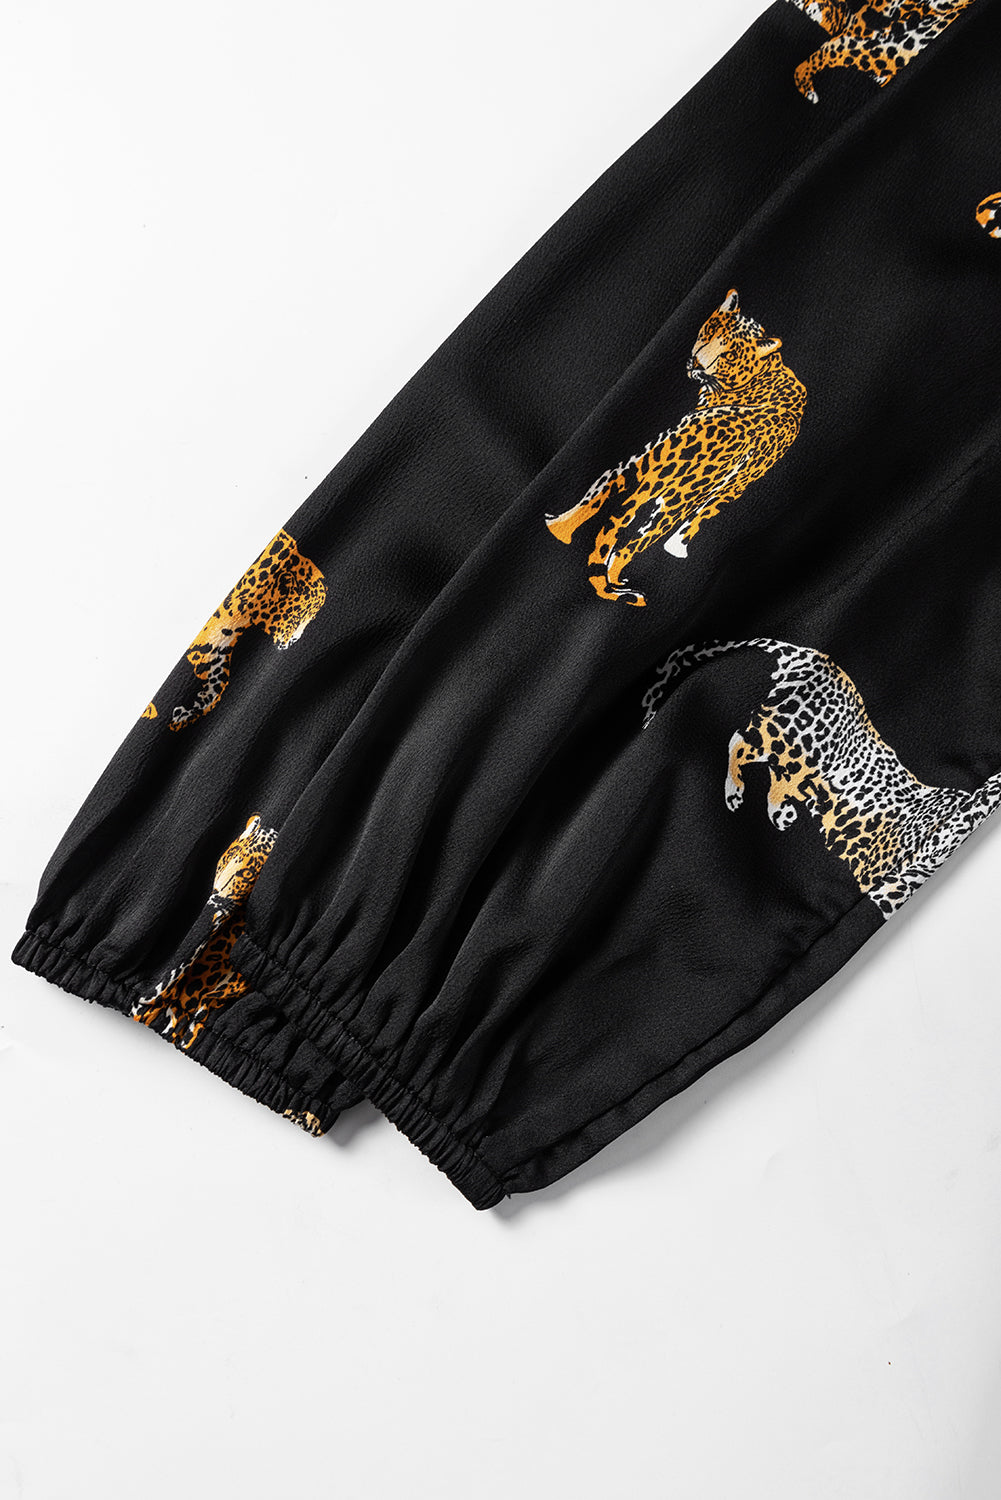 Črna živahna ohlapna obleka z dolgimi rokavi z leopardjim vzorcem